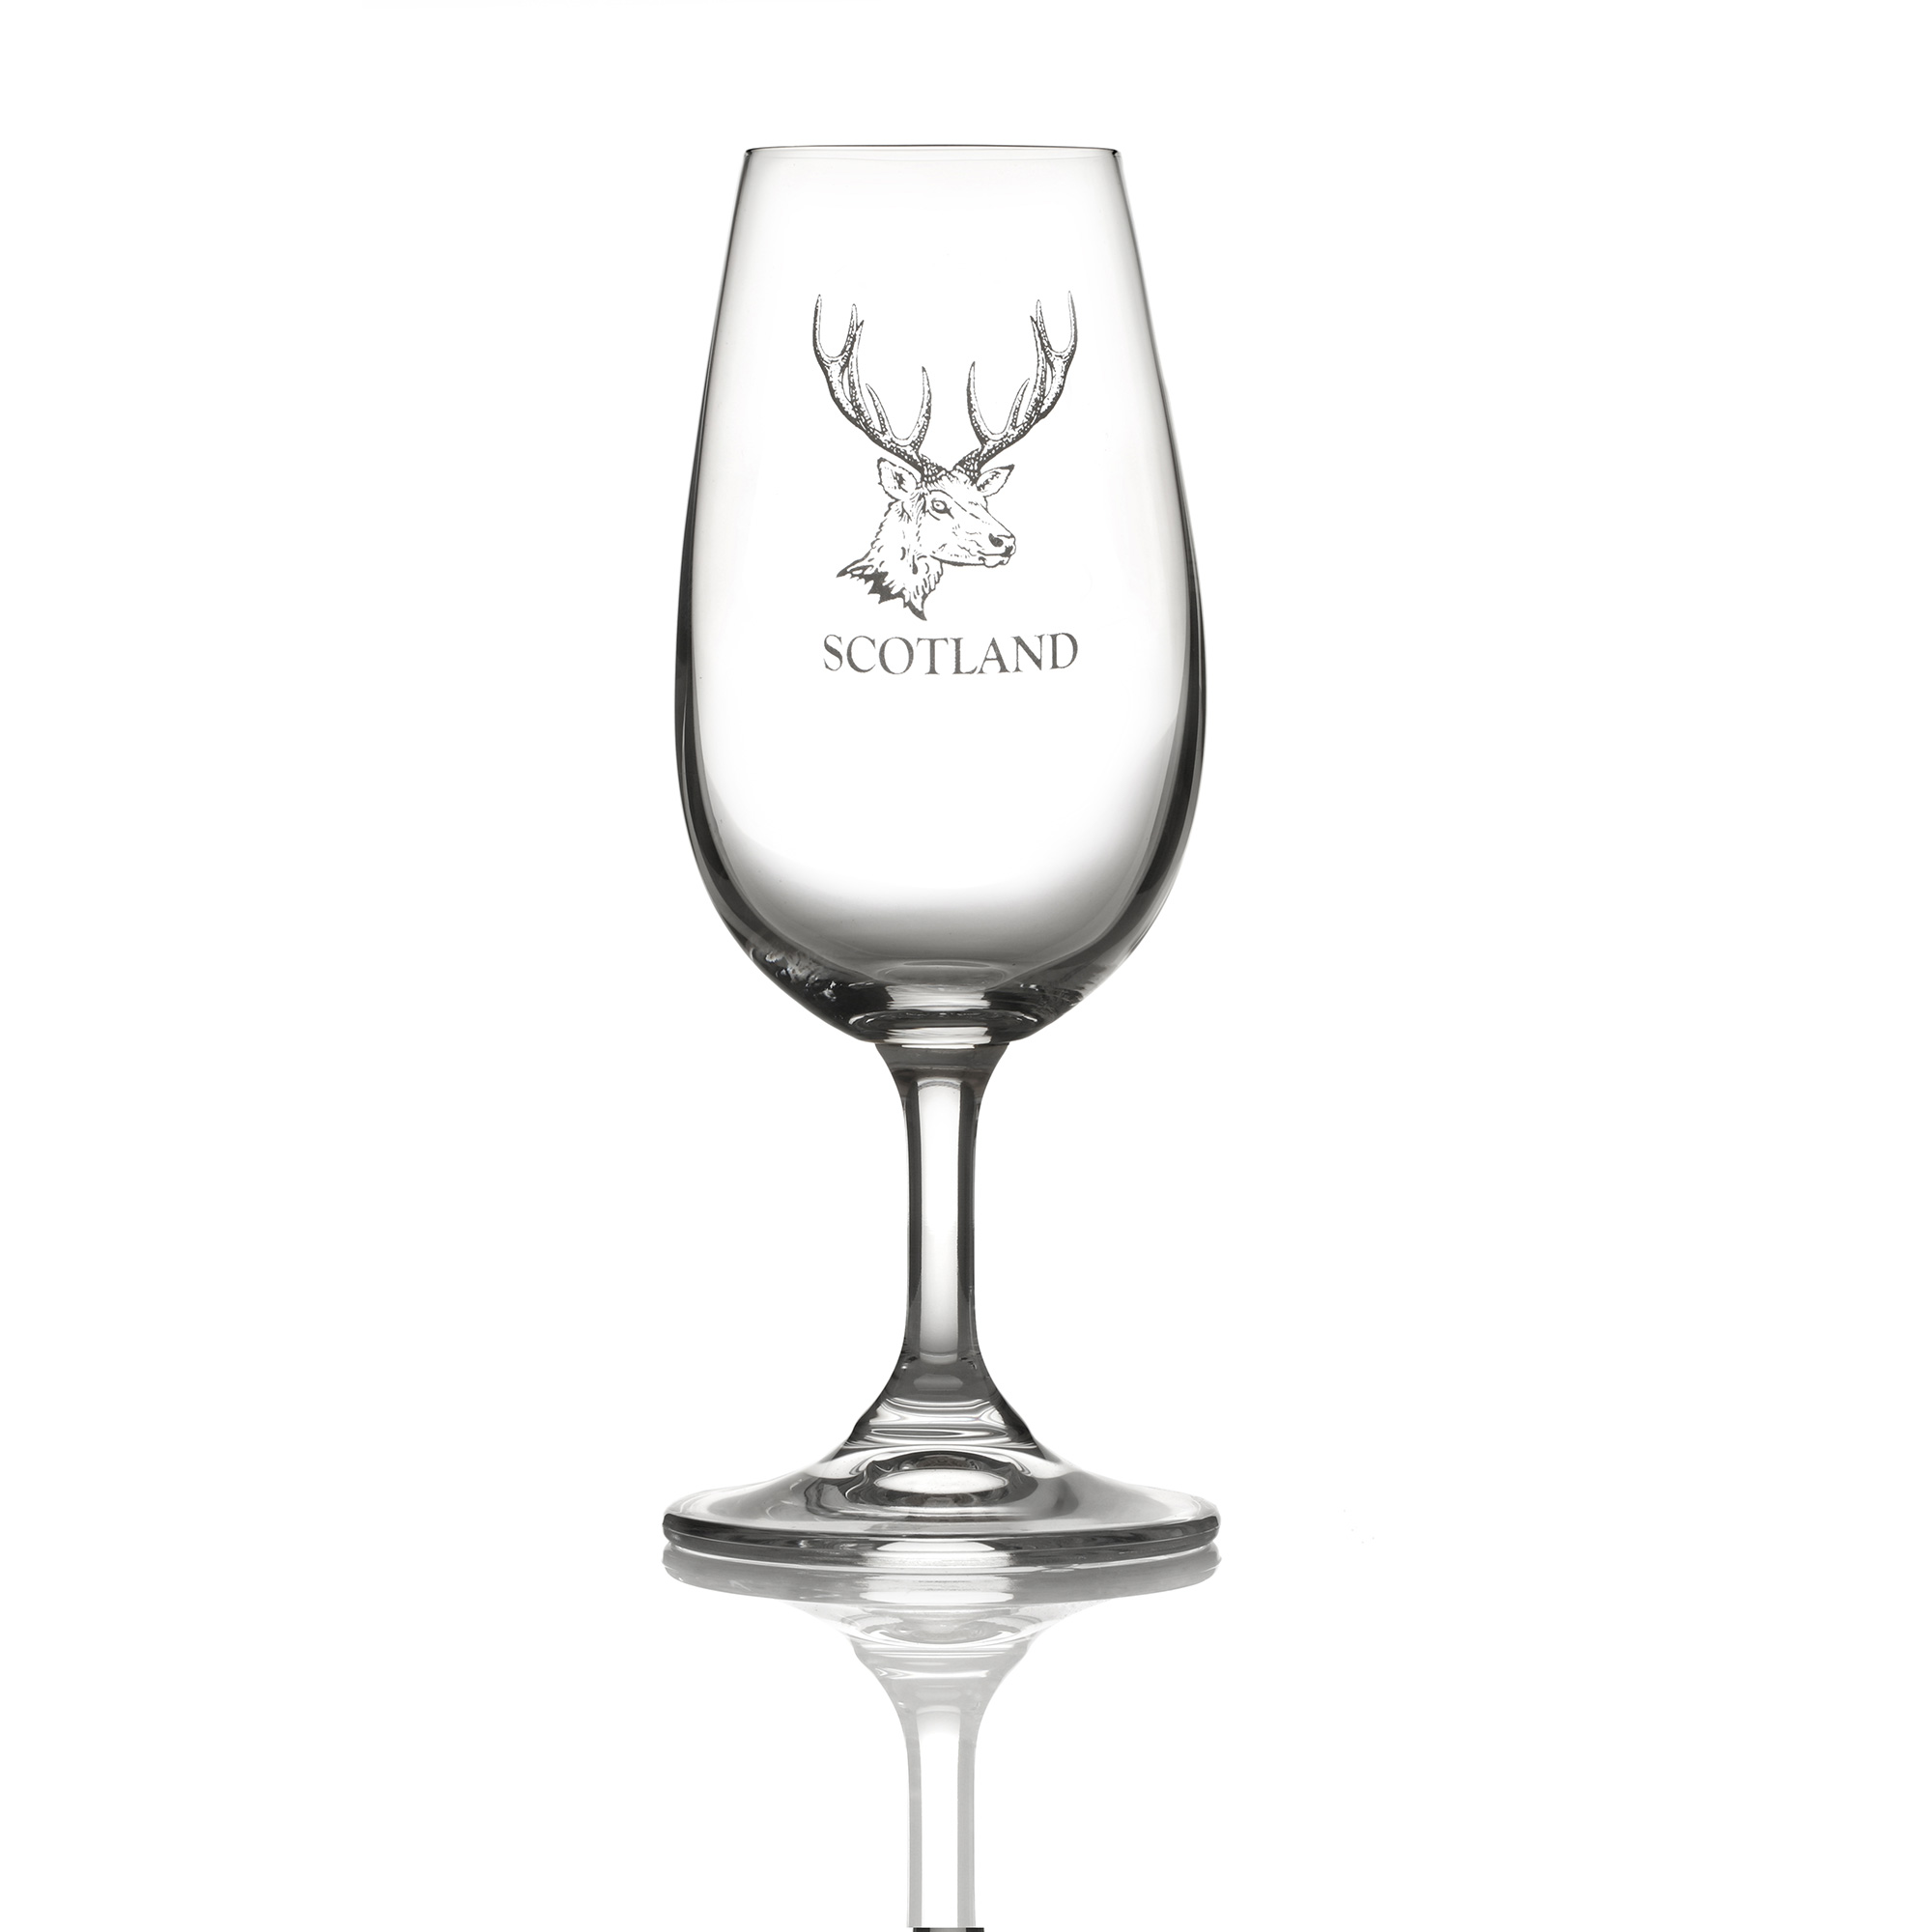 Highland Hirsch - Kristall Whisky Tasting Glas / Nosing Copita aus Schottland